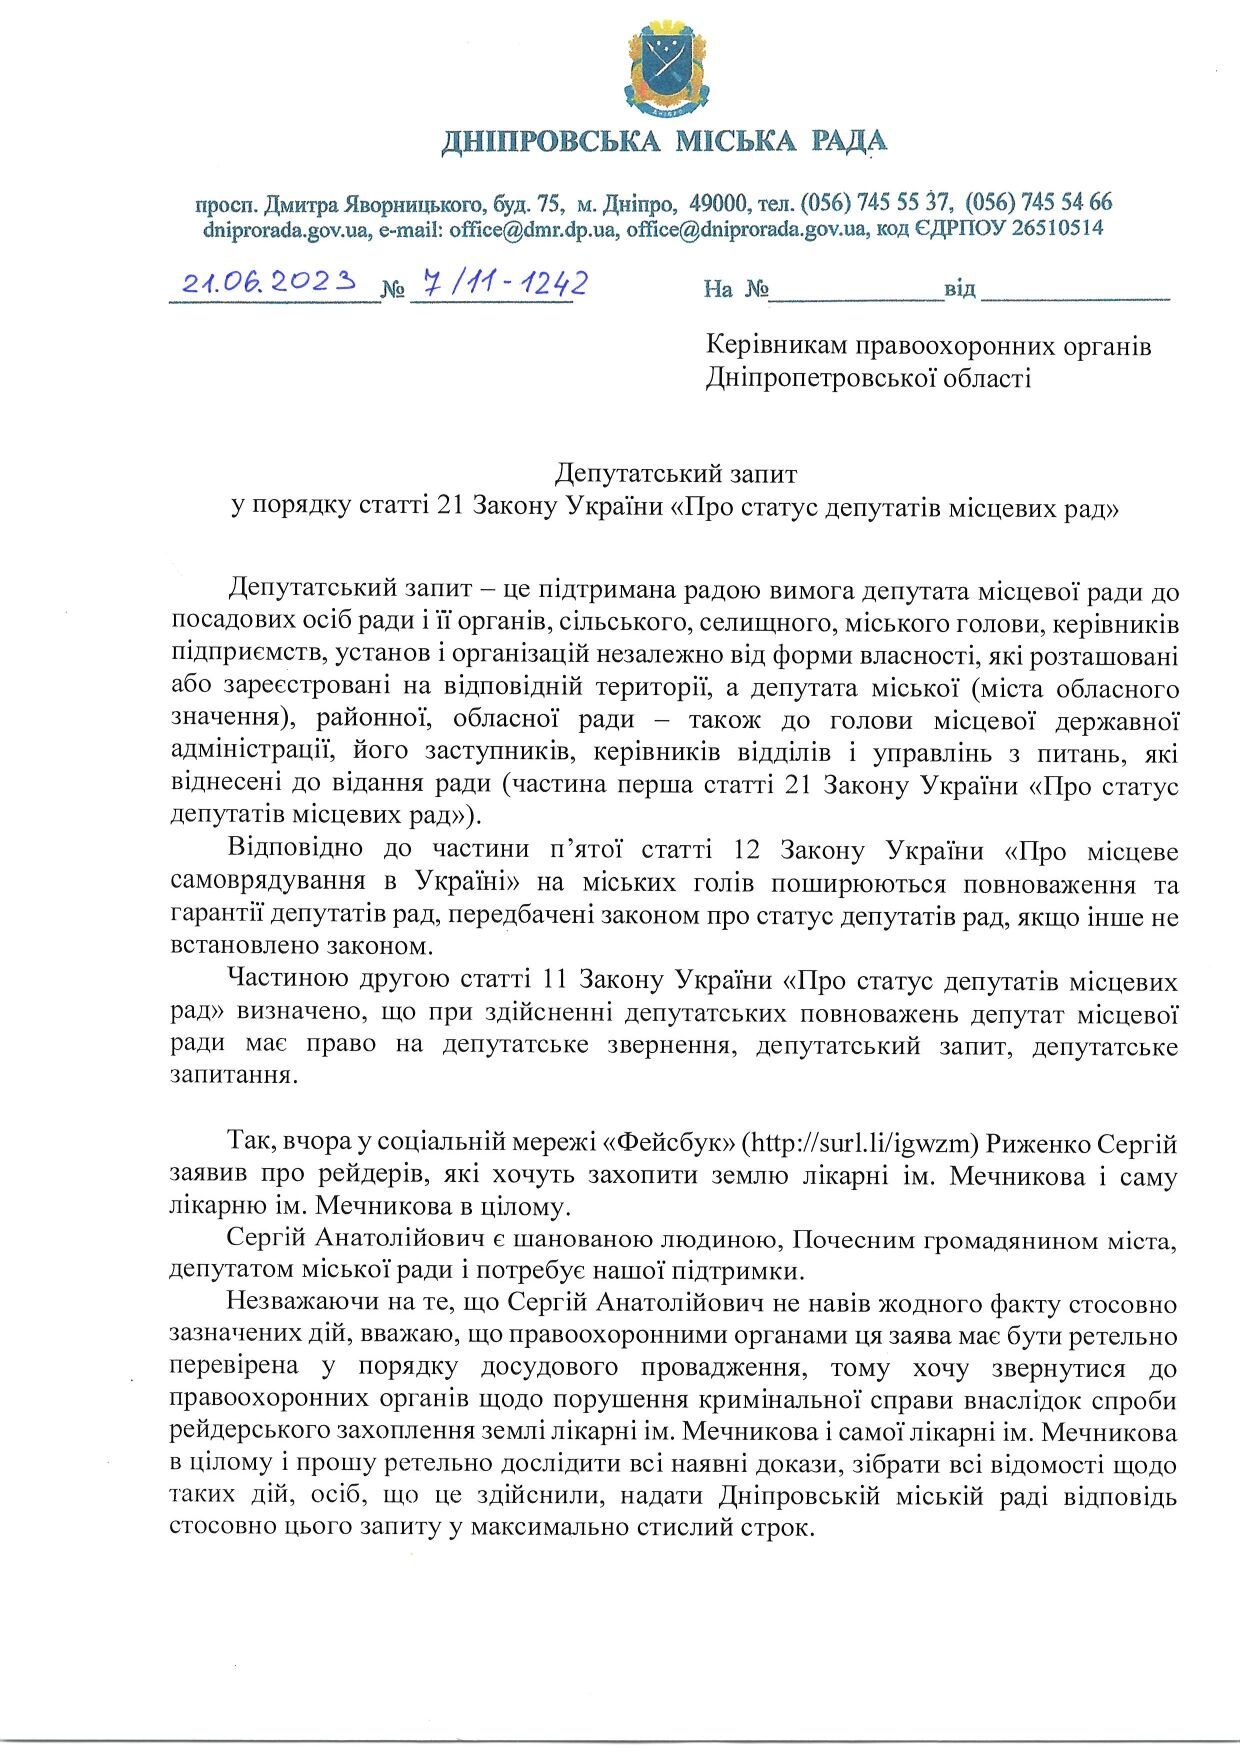 Рыженко, заявивший о попытке захвата больницы Мечникова, не поддержал инициативу о передаче дела правоохранителям